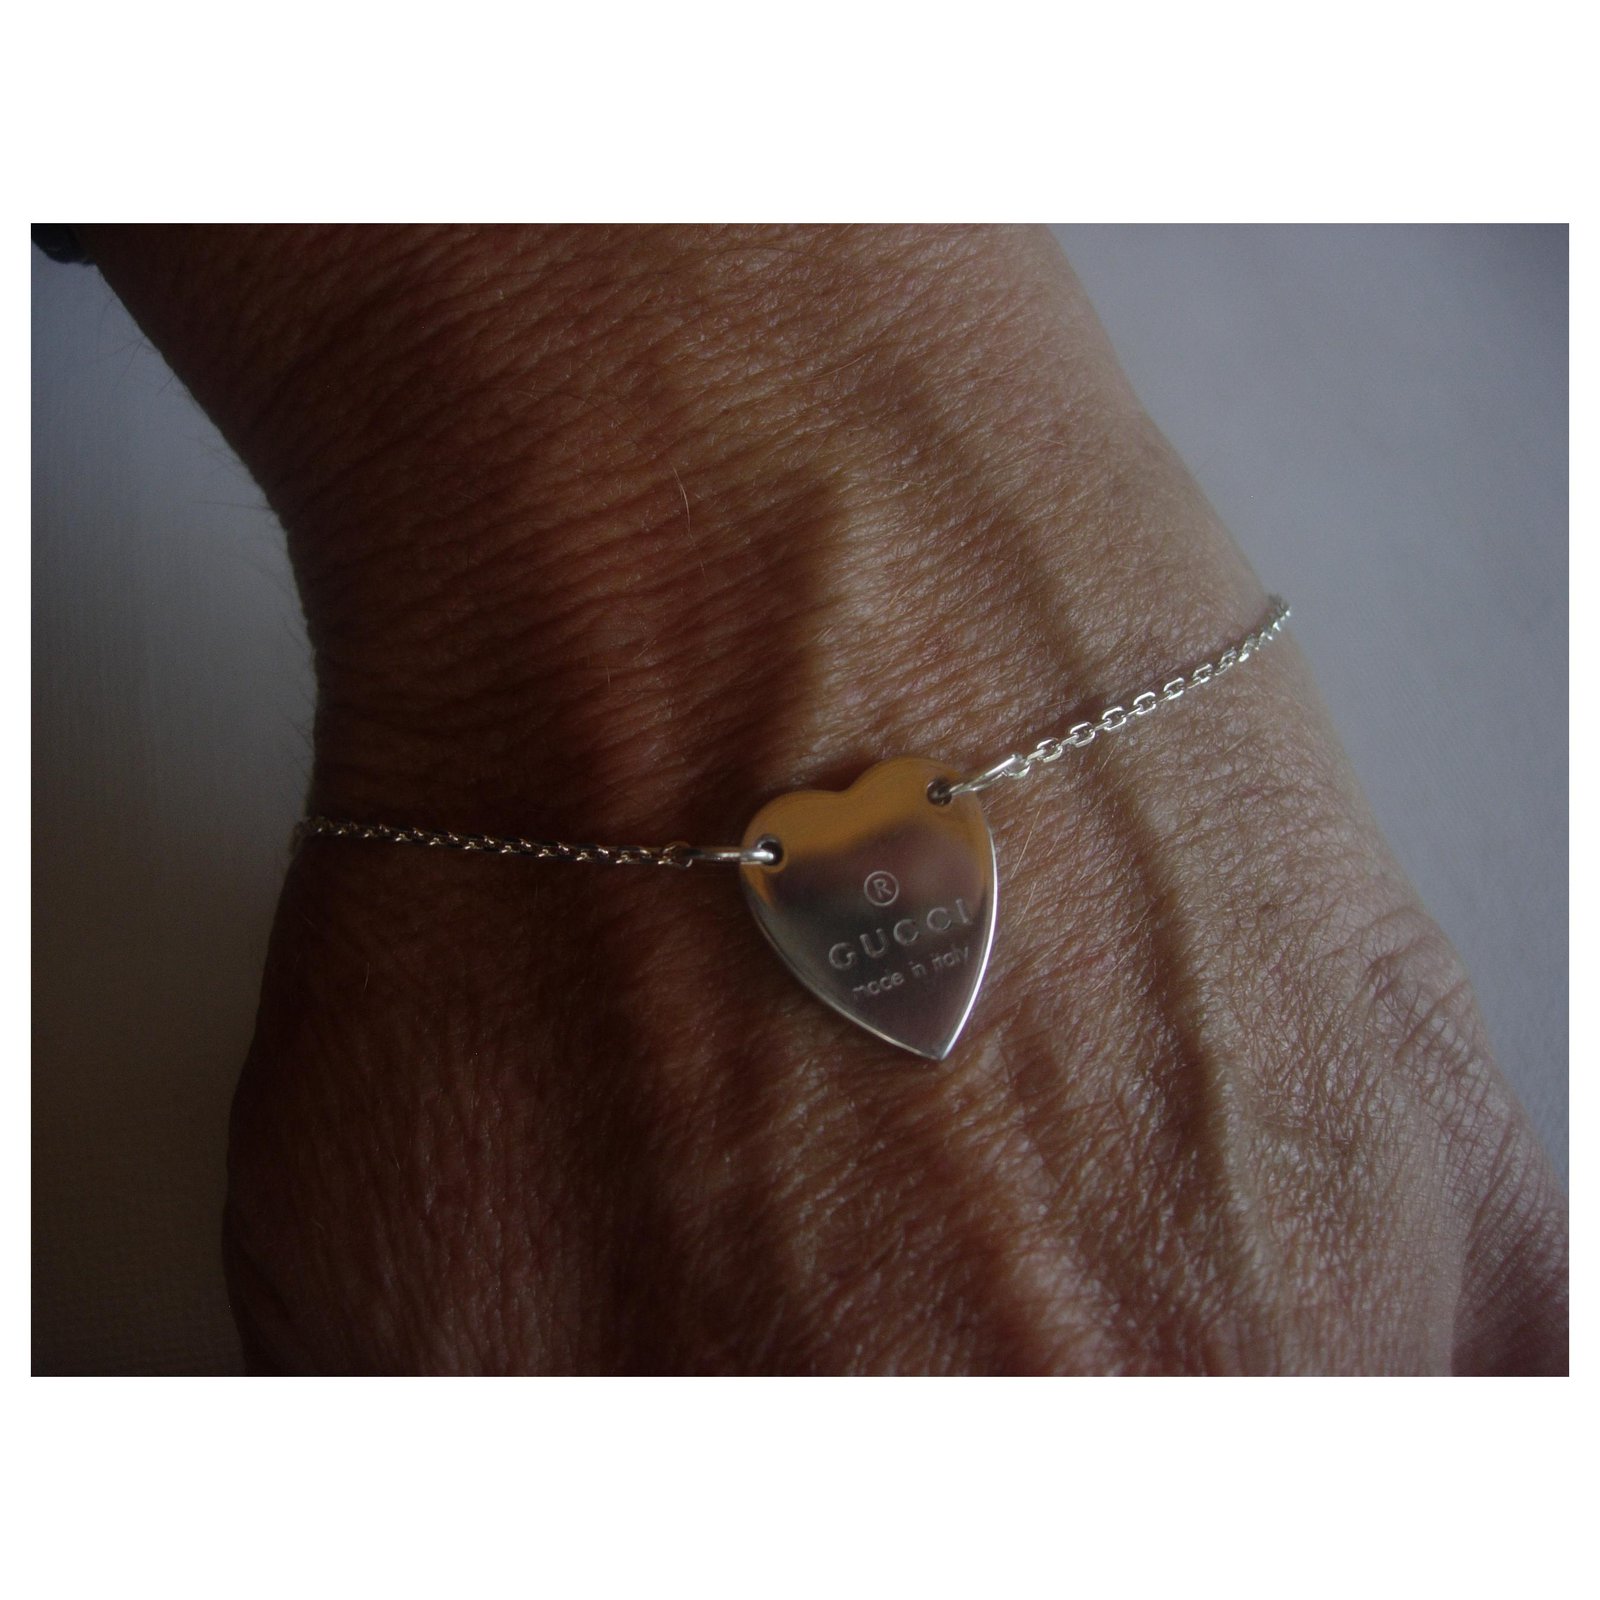 gucci bracelet silver heart